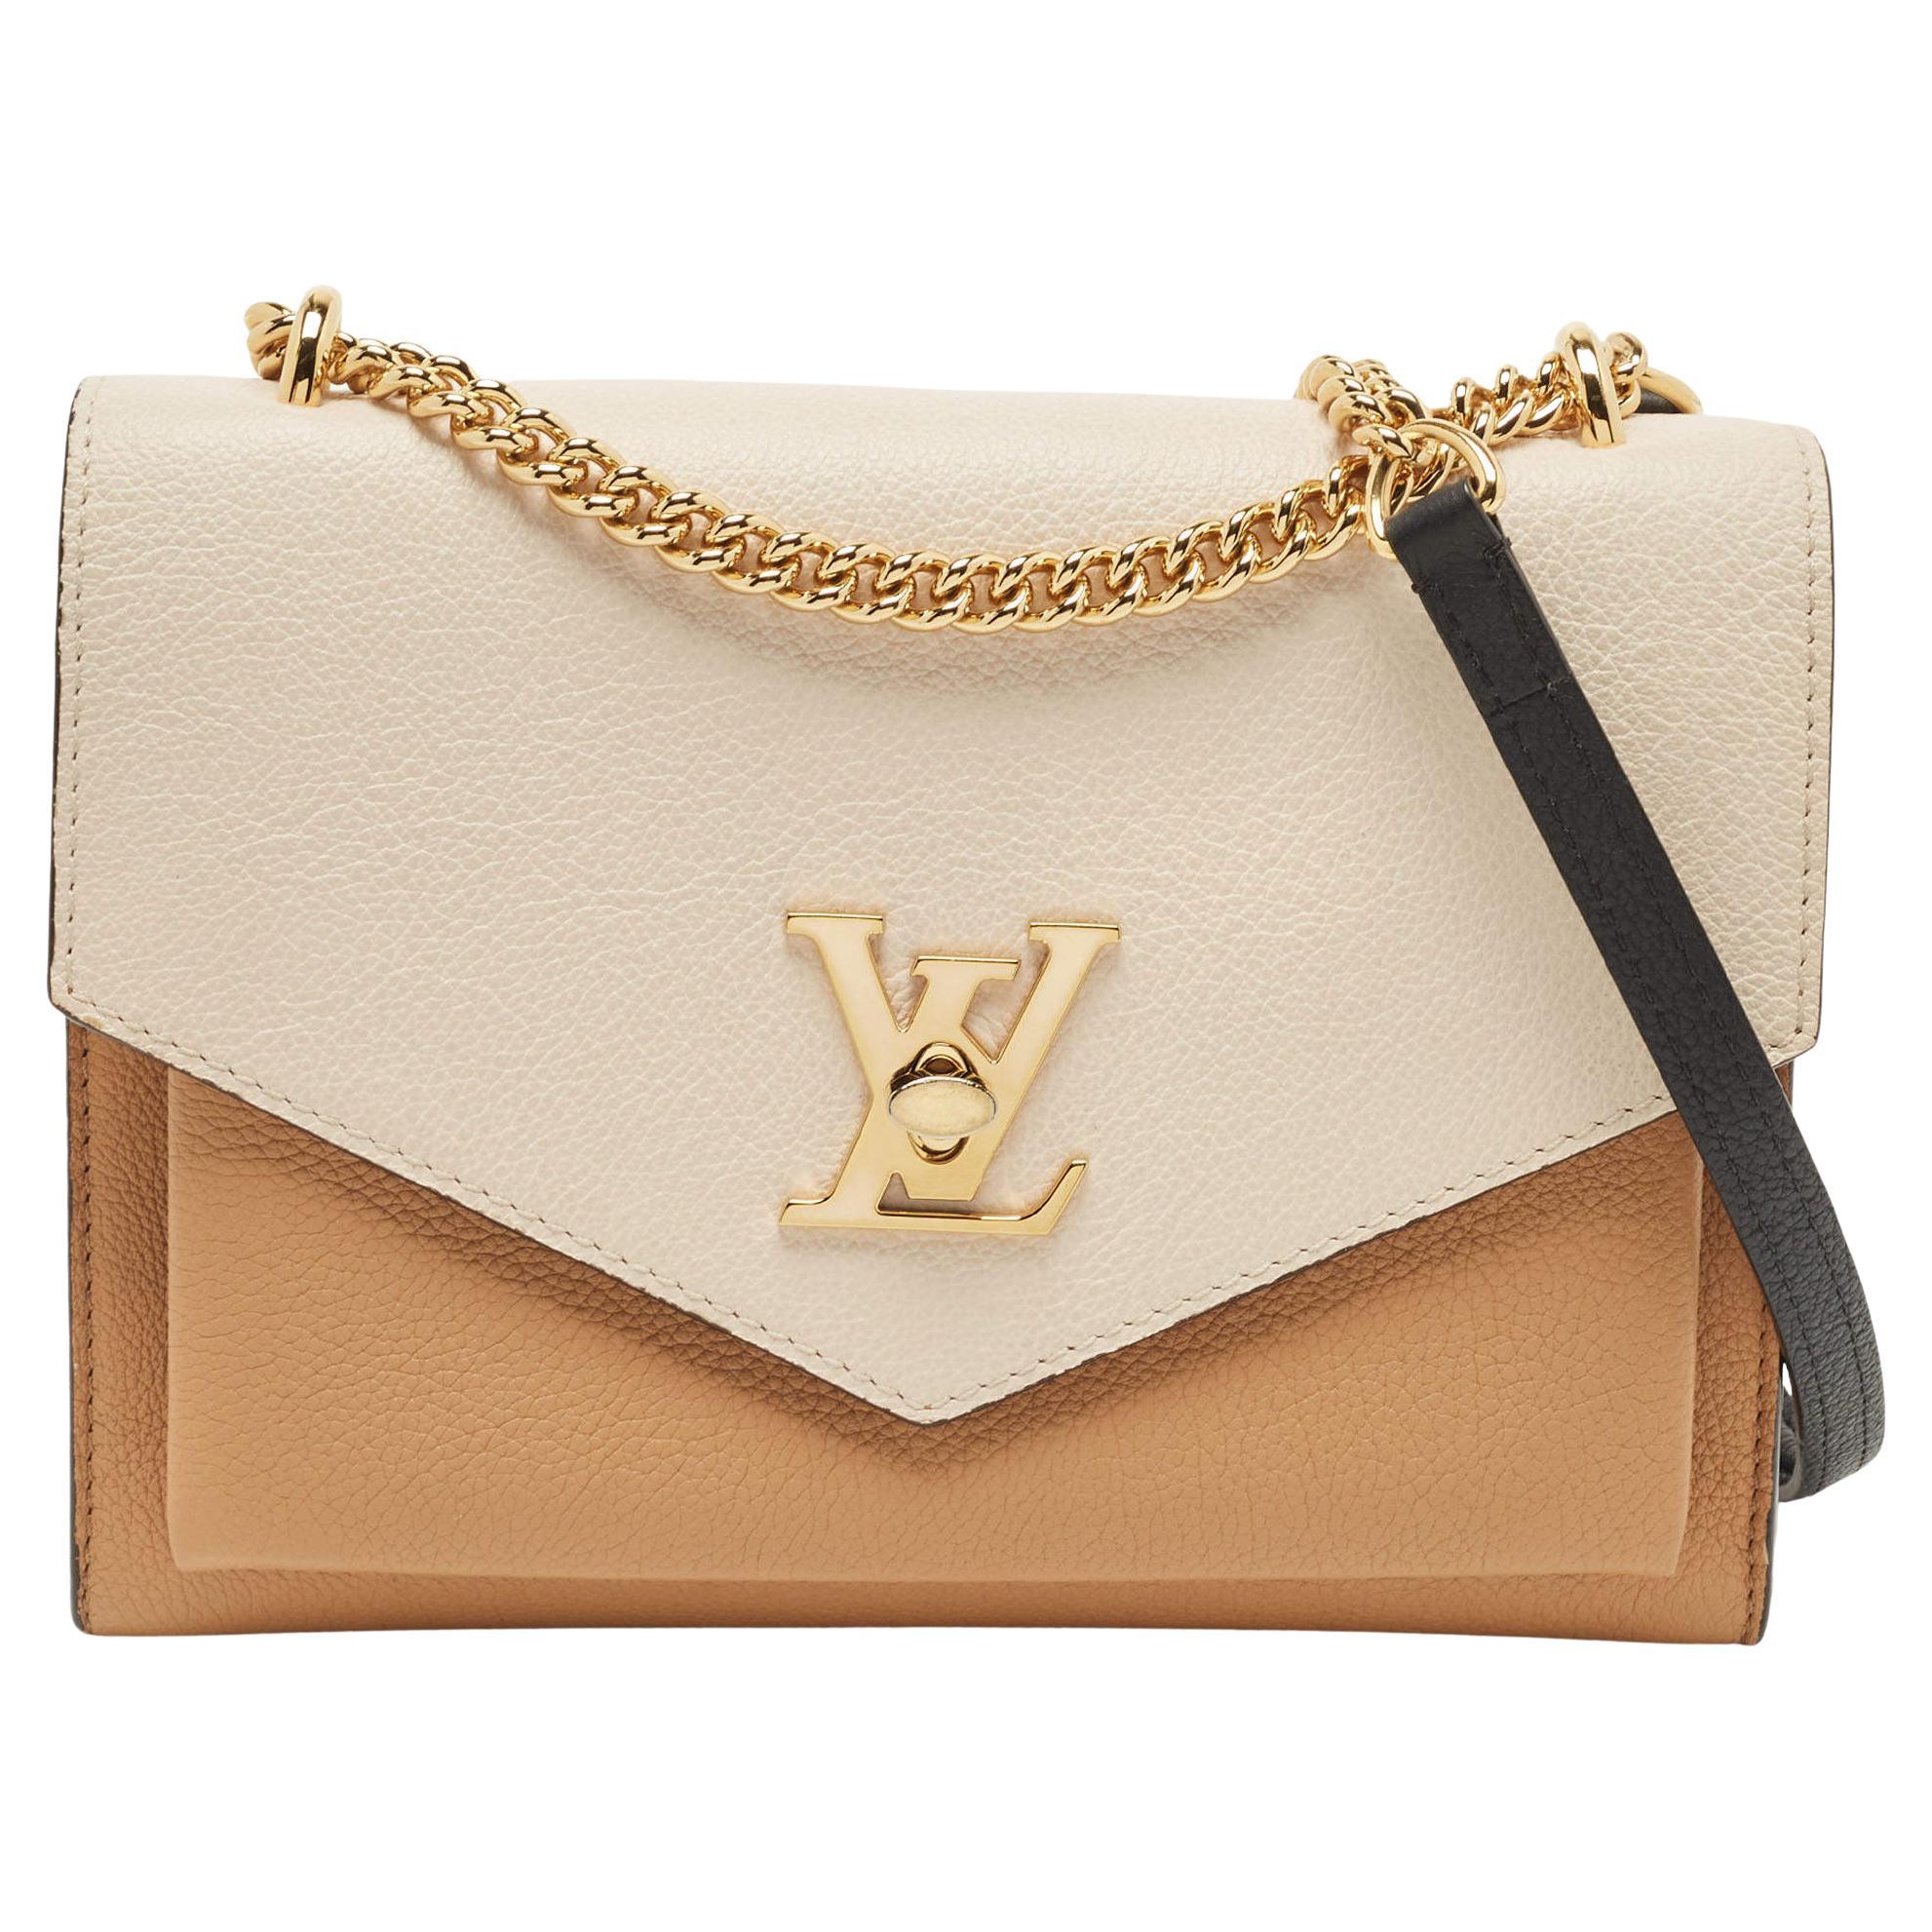 Louis Vuitton Black Mylockme chain bag Soft grained Excellent Condition